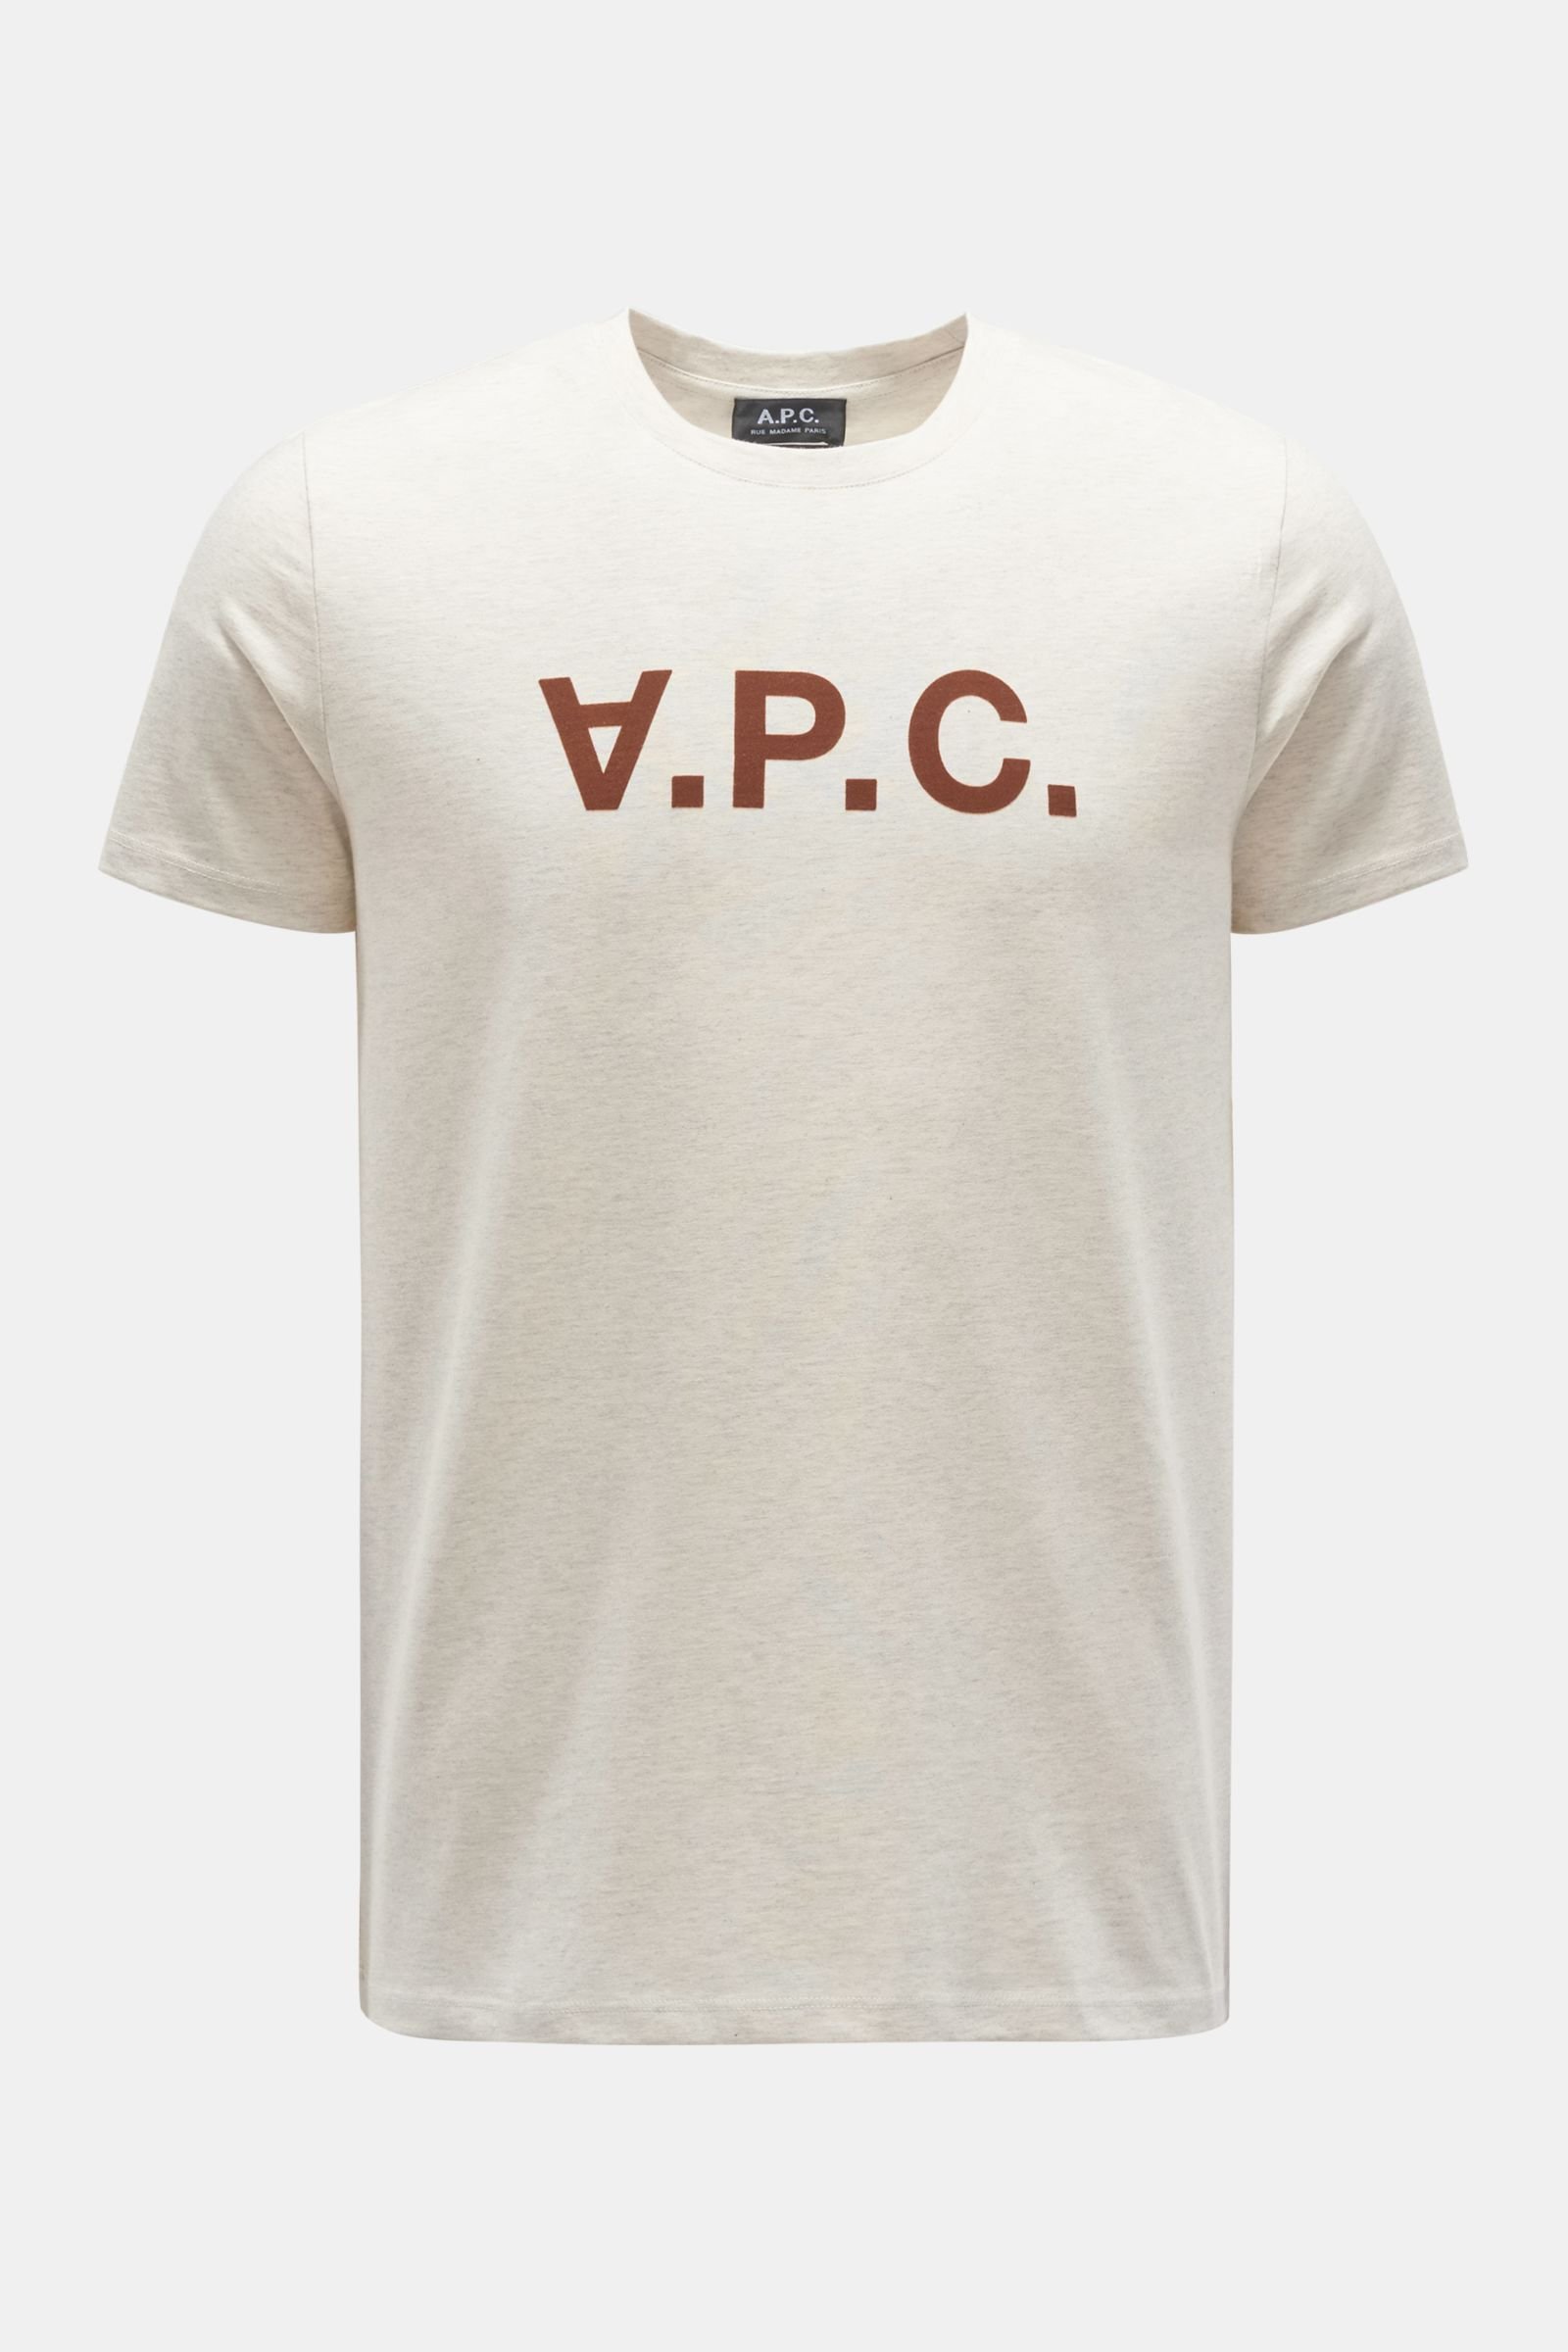 Rundhals-T-Shirt 'VPC' beige